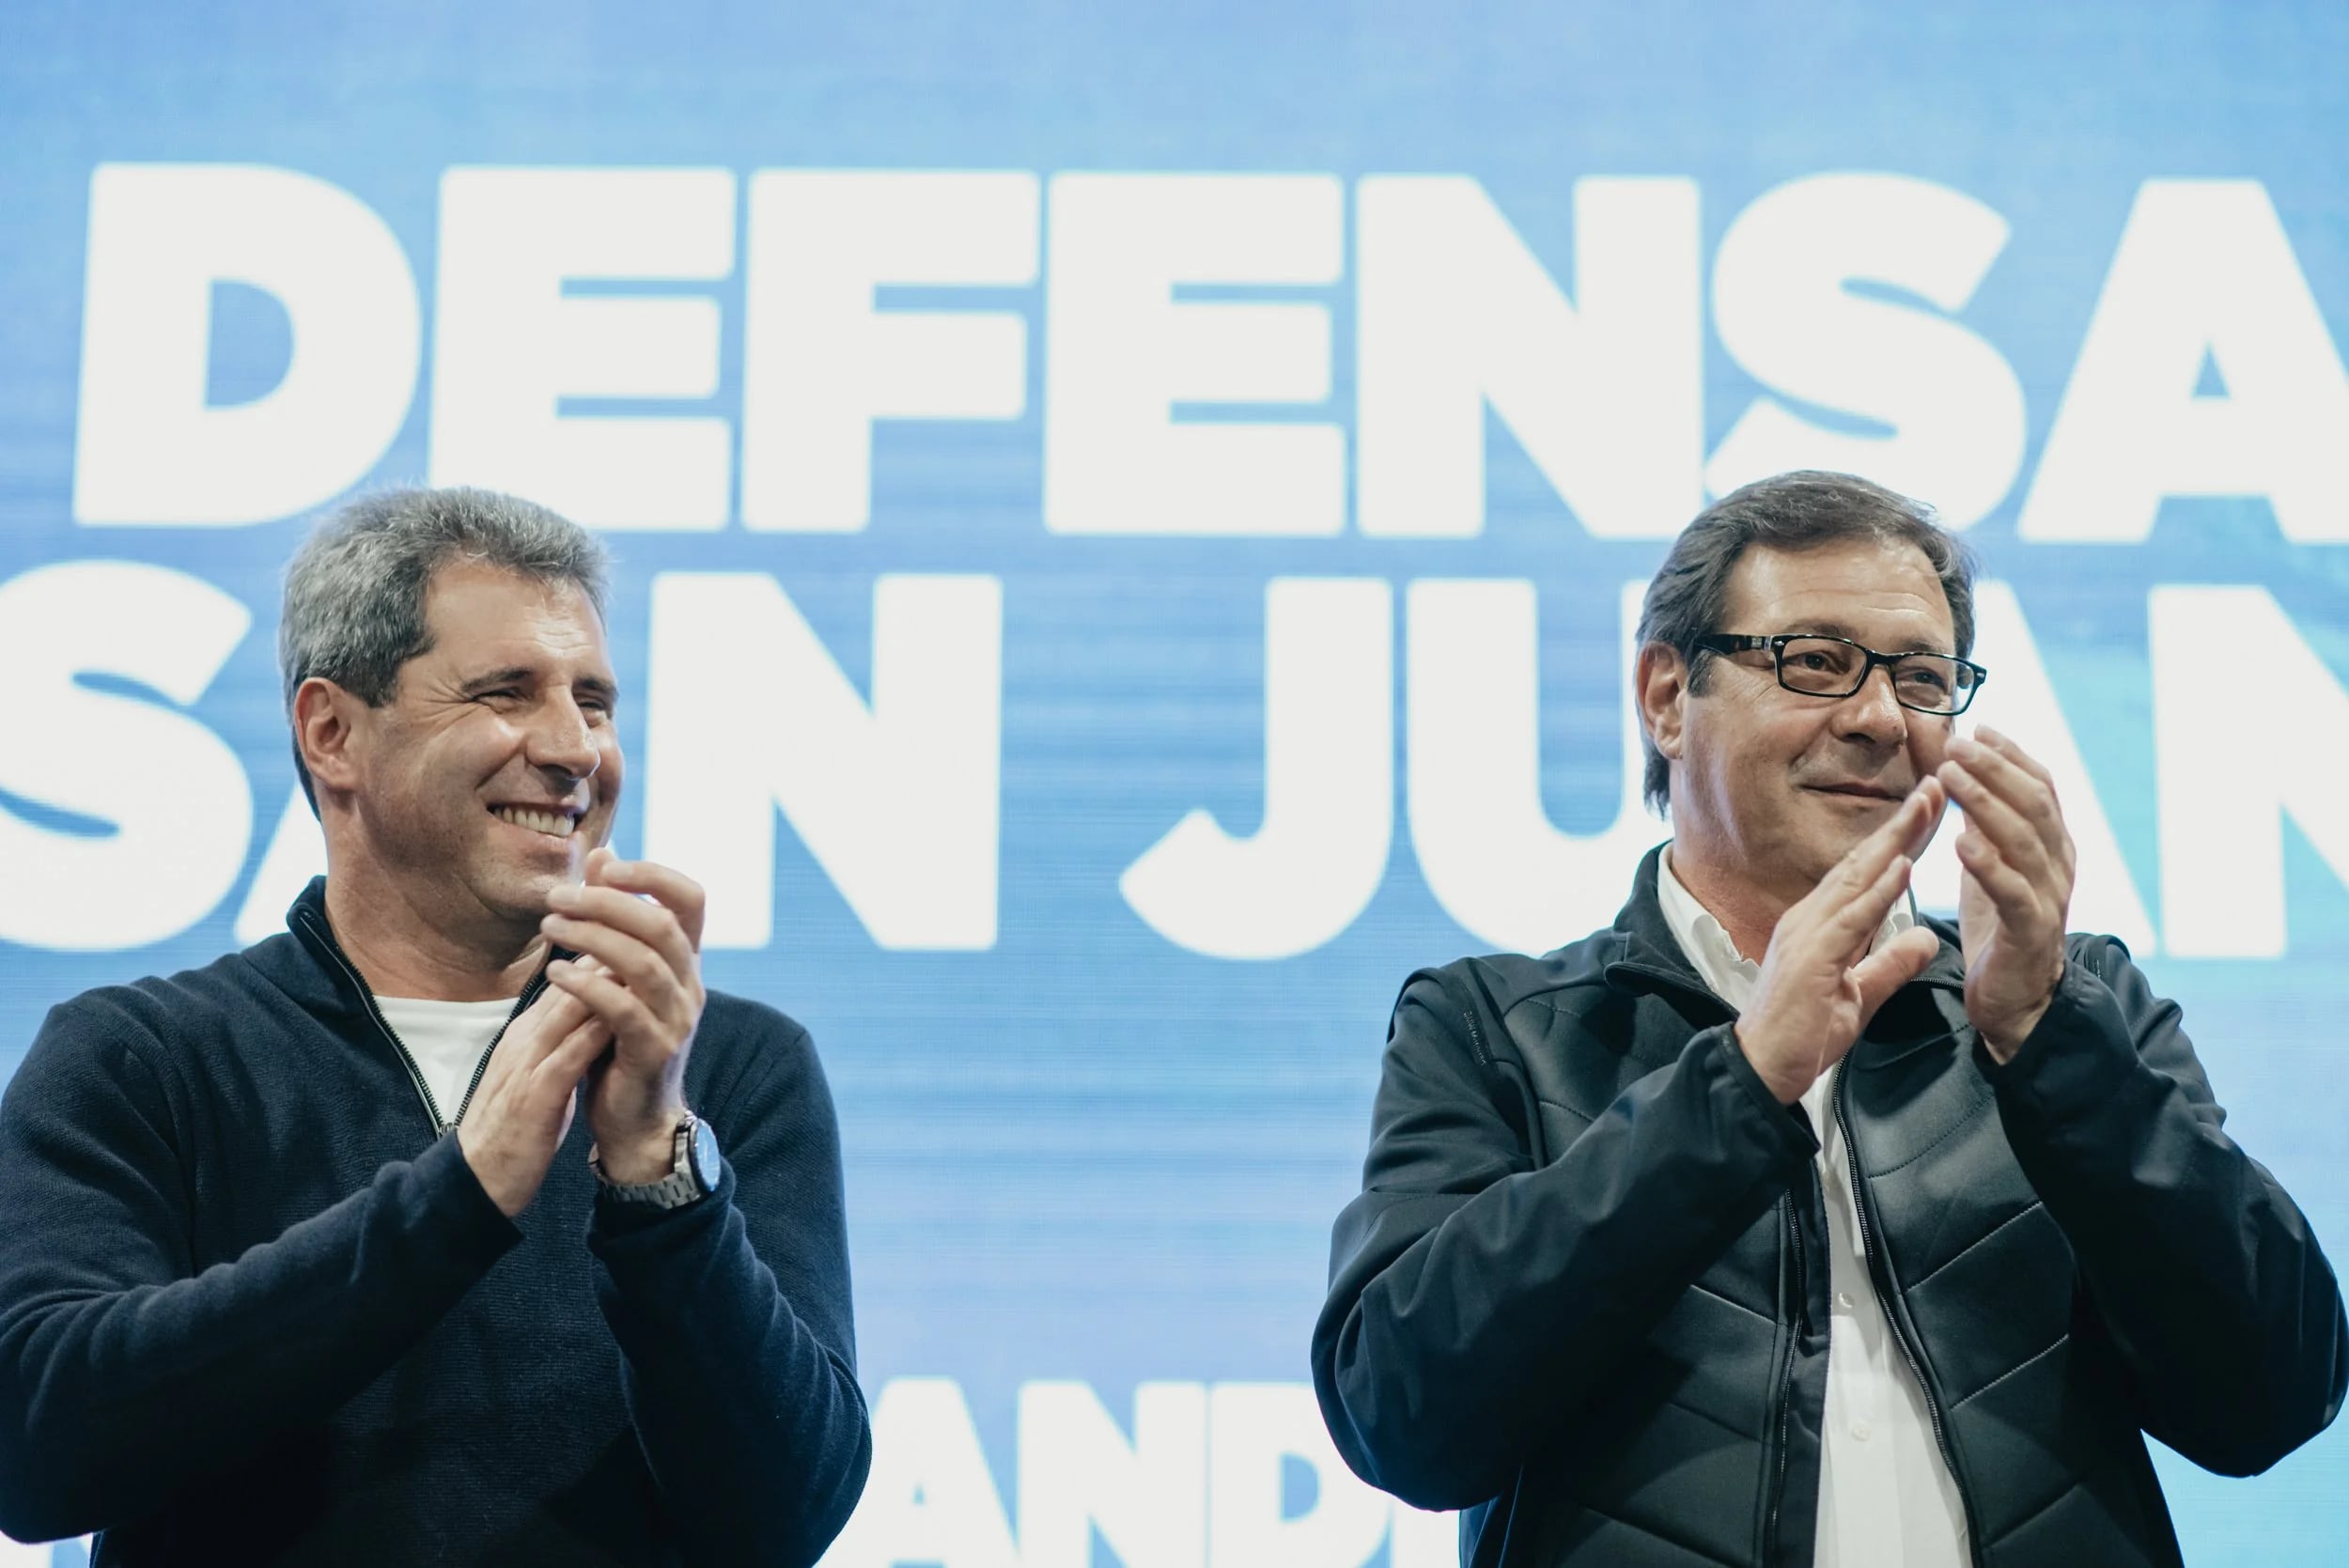 El gobernador Sergio Uñac impulsó a su hermano Rubén como candidato a sucederlo después que la Corte Suprema lo inhabilitó para competir por otro mandato